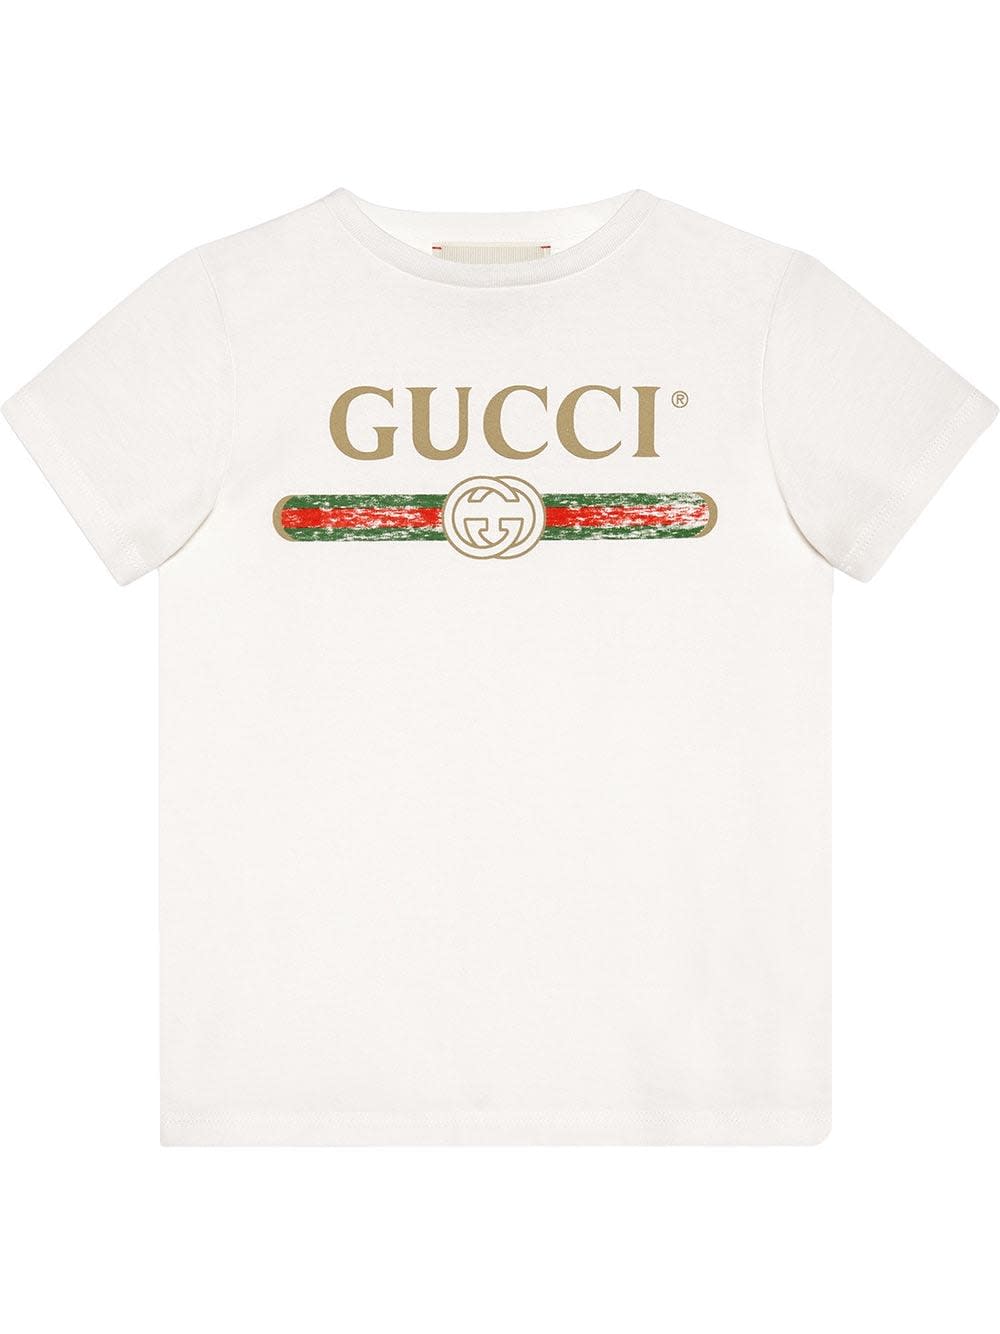 Gucci White Cotton Tshirt